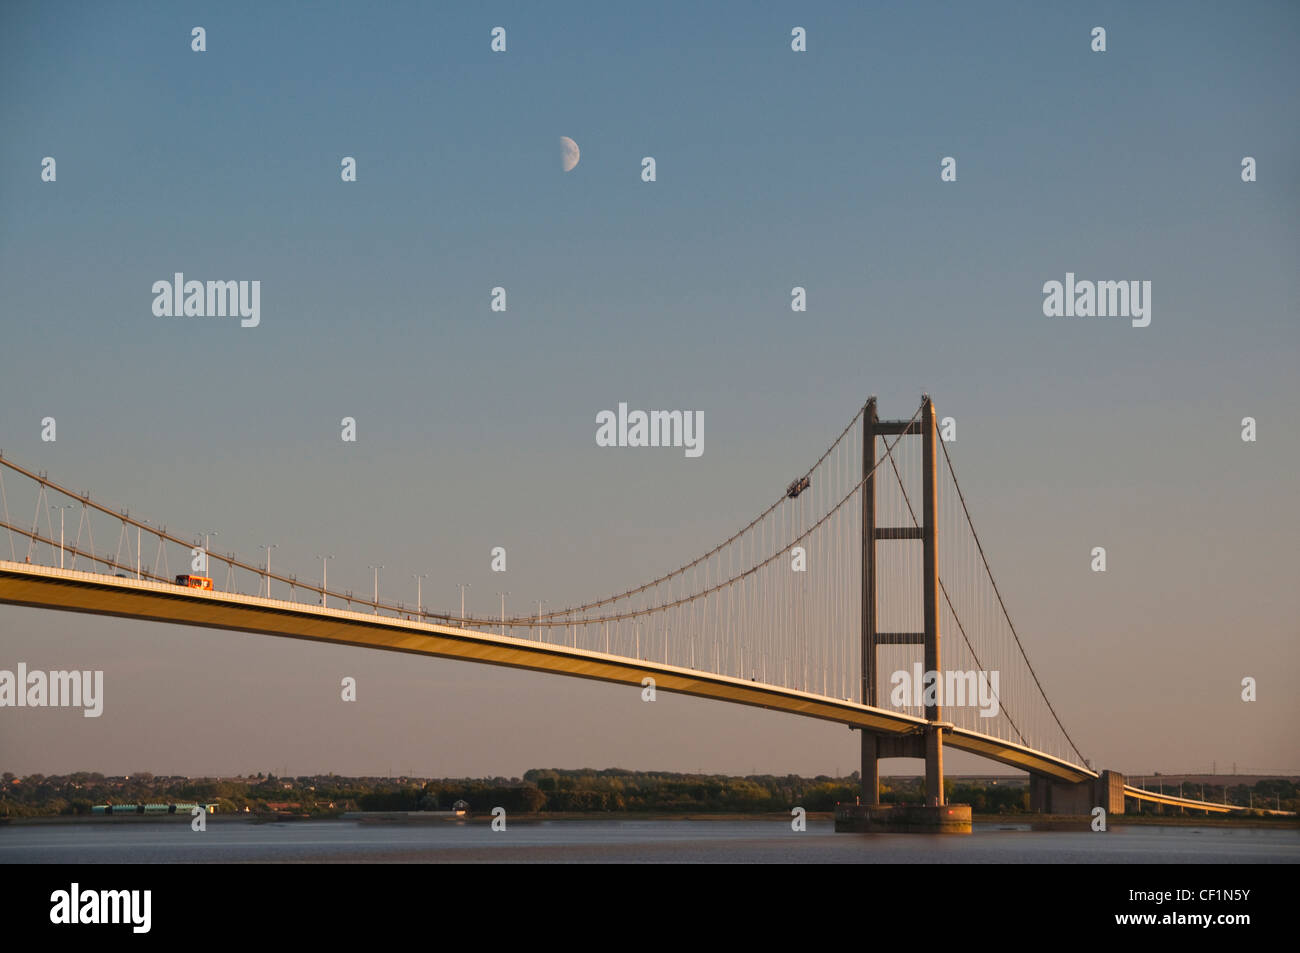 Humber Bridge, die fünftgrößte Single-Span-Hängebrücke der Welt, mit einer halben Mond zeigt oben eines der Unterstützung t Stockfoto